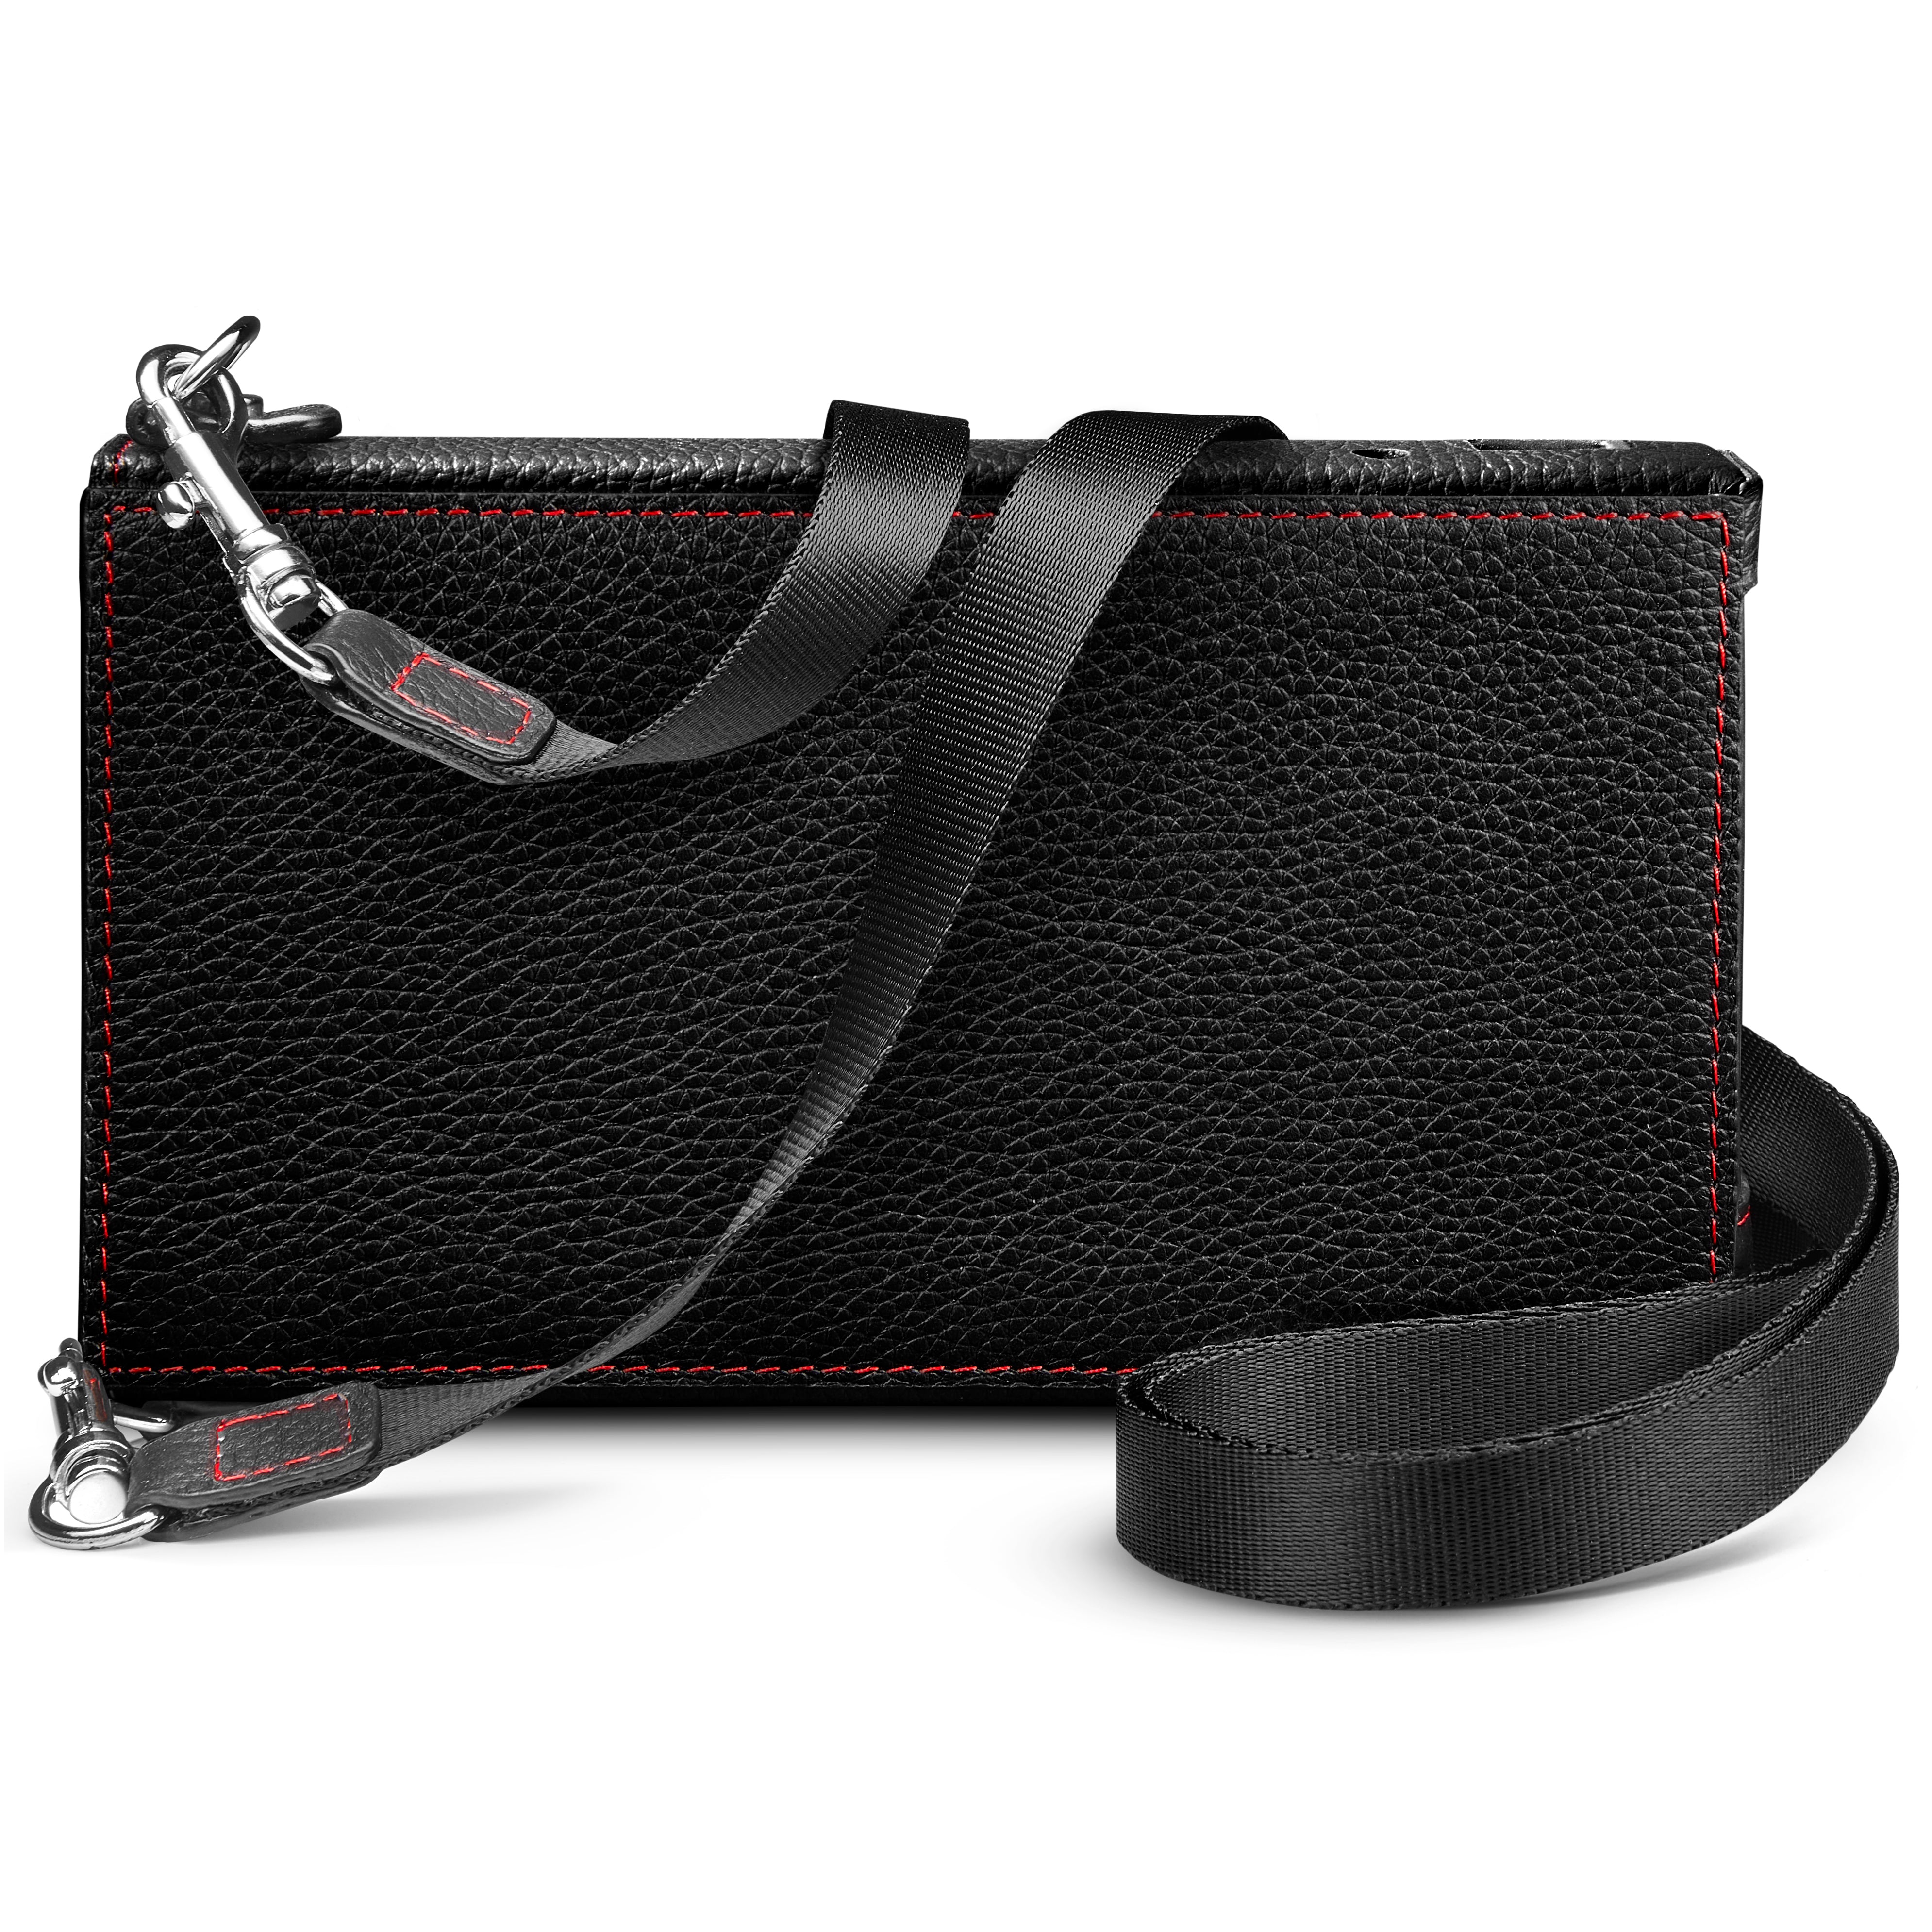 Chord Hugo 2 2go Premium Leather Carry Case